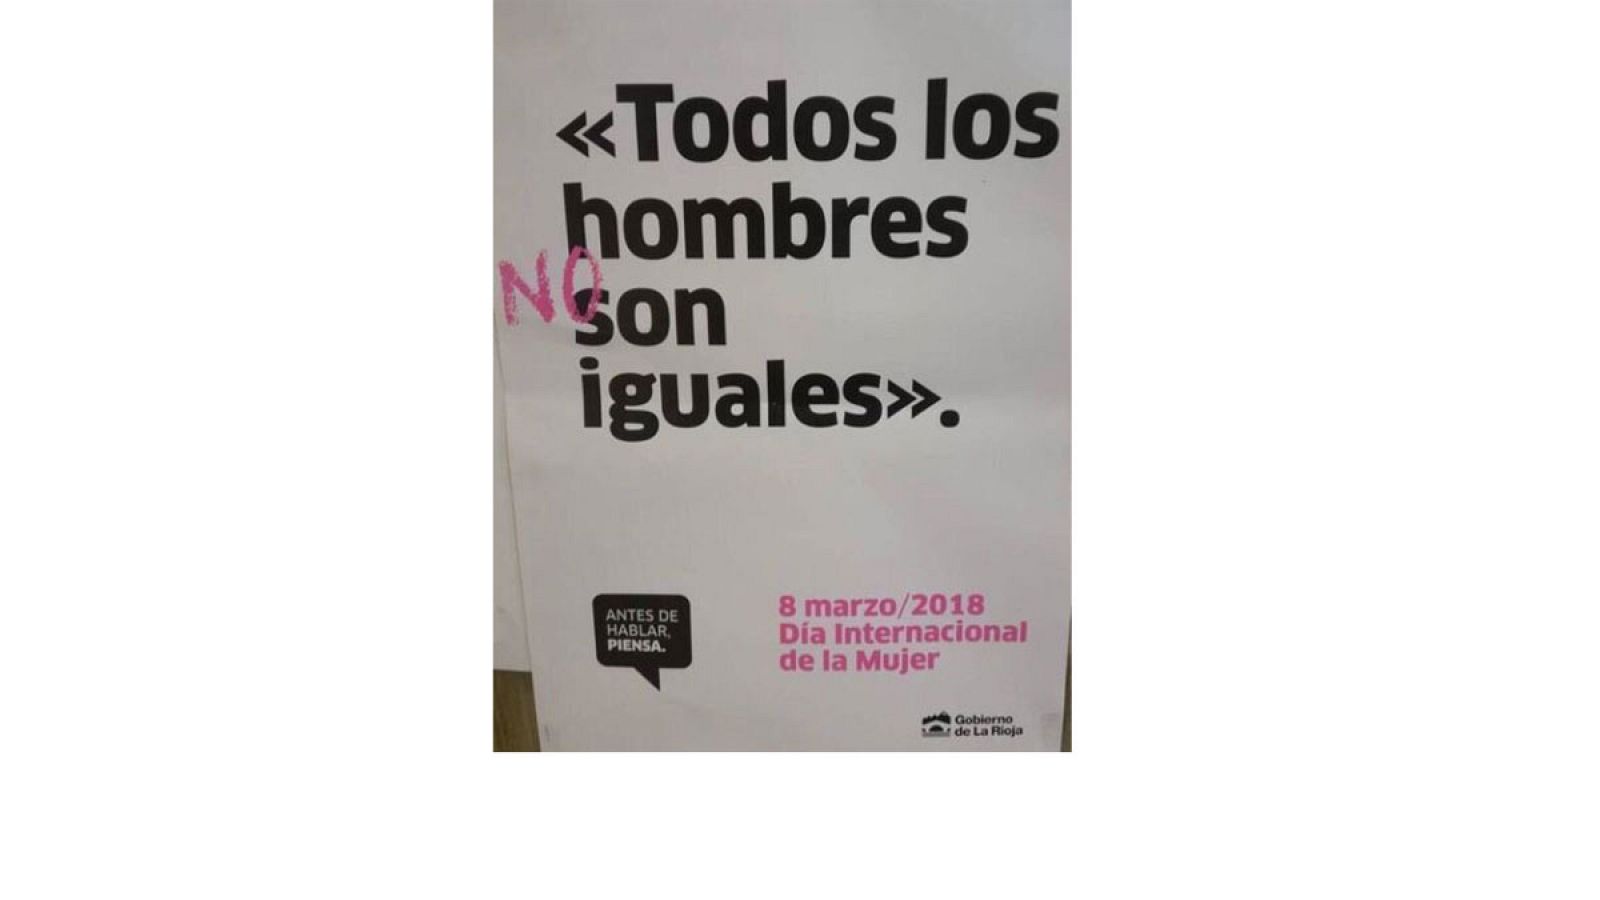 Campaña institucional del Gobierno de la Rioja por el 8 de marzo